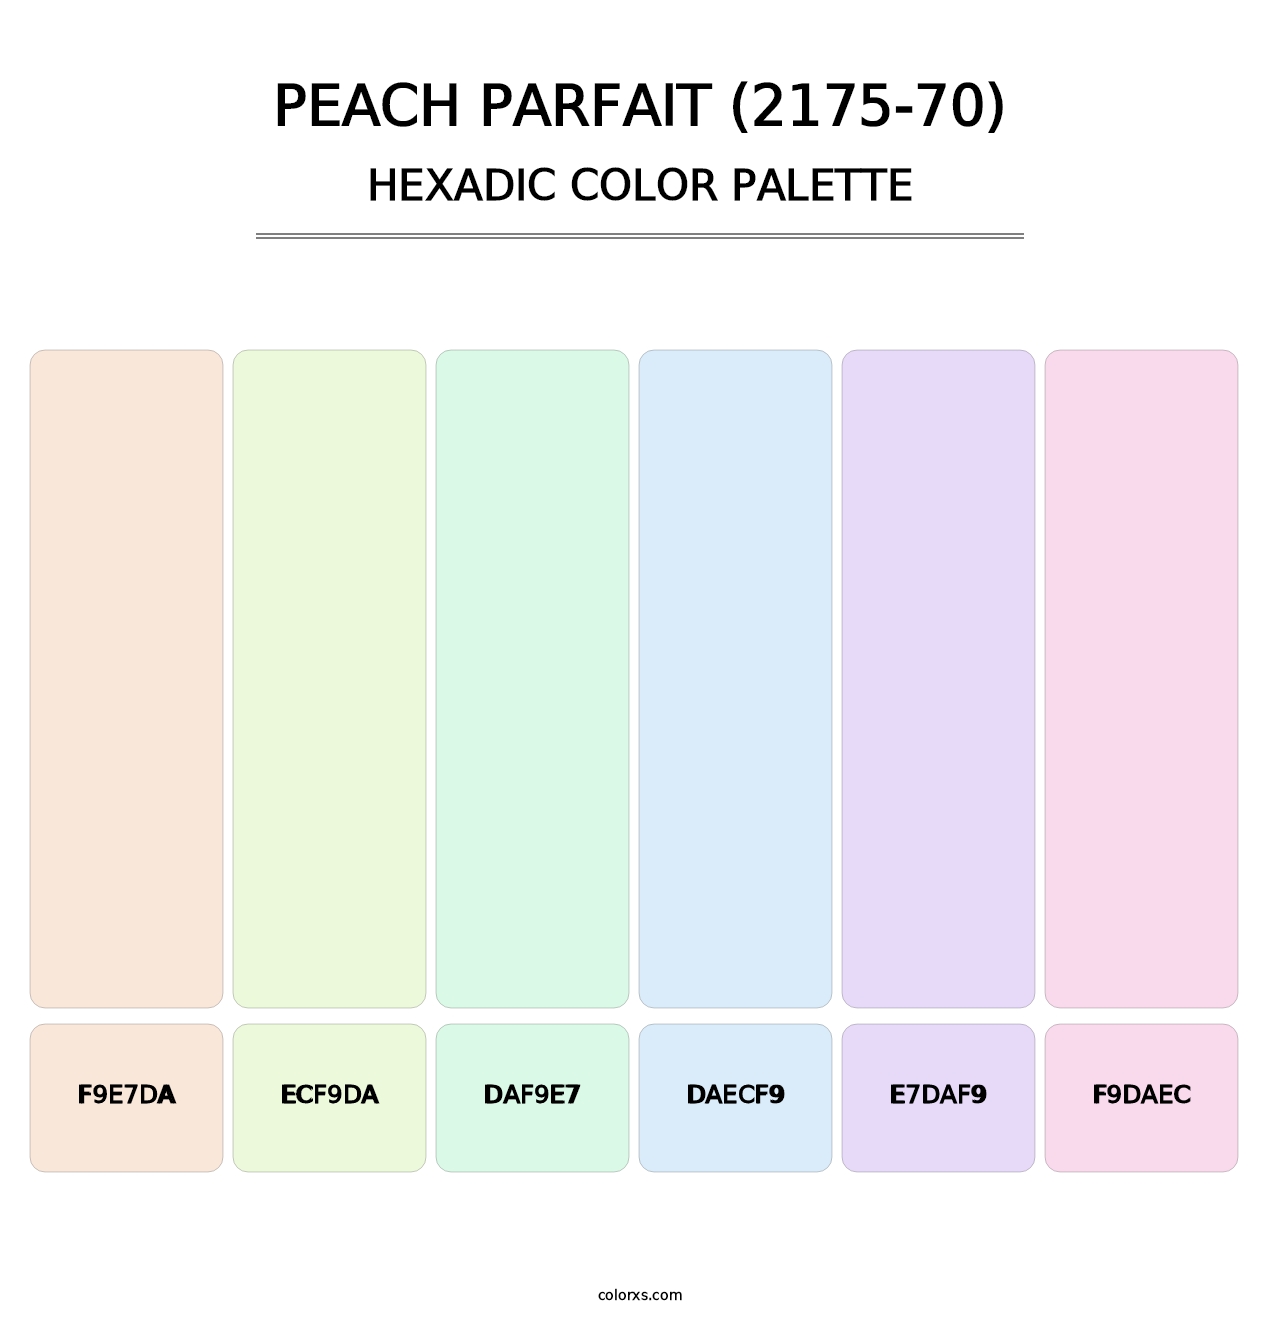 Peach Parfait (2175-70) - Hexadic Color Palette